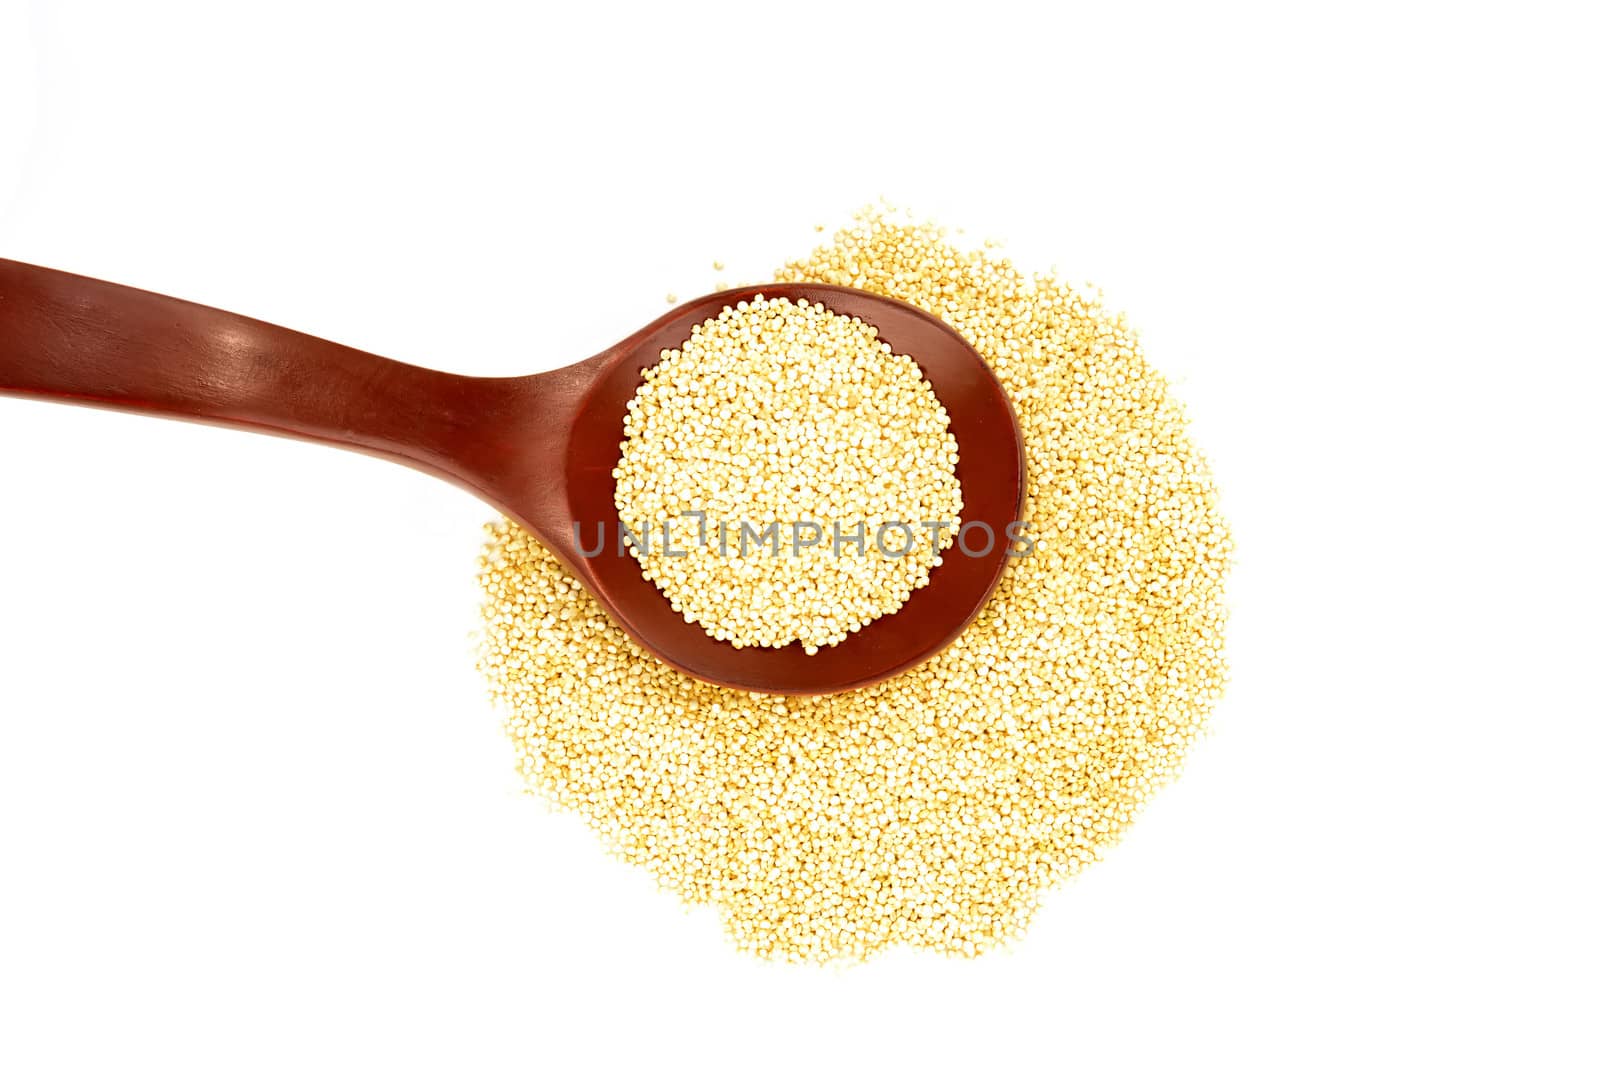 Chenopodium quinoa white background by Carche